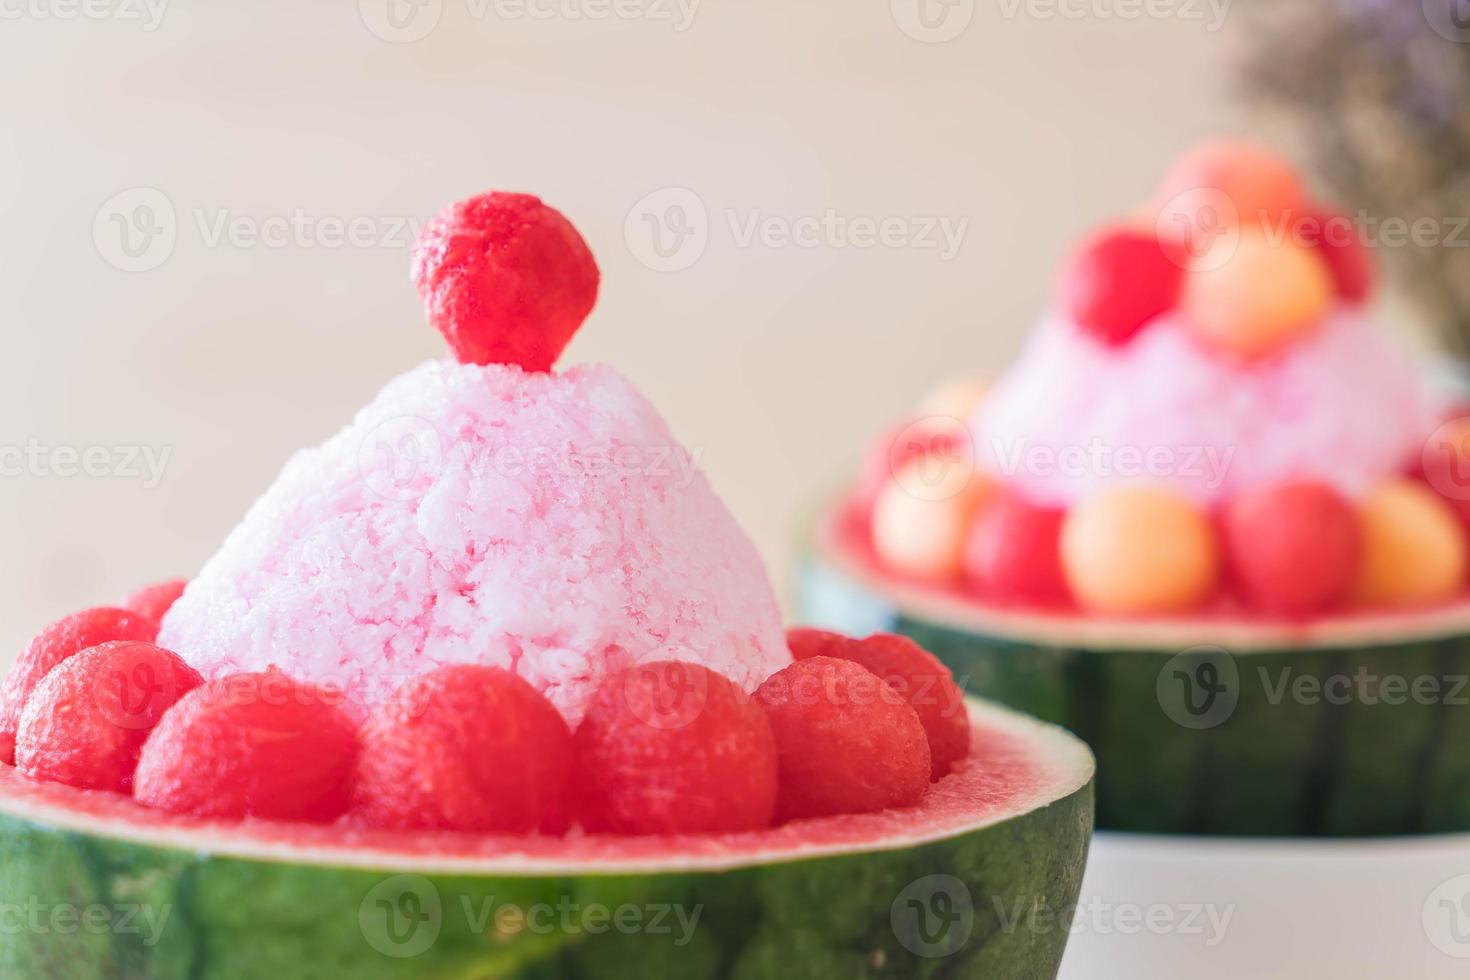 sobremesa bingsu de melancia na mesa foto